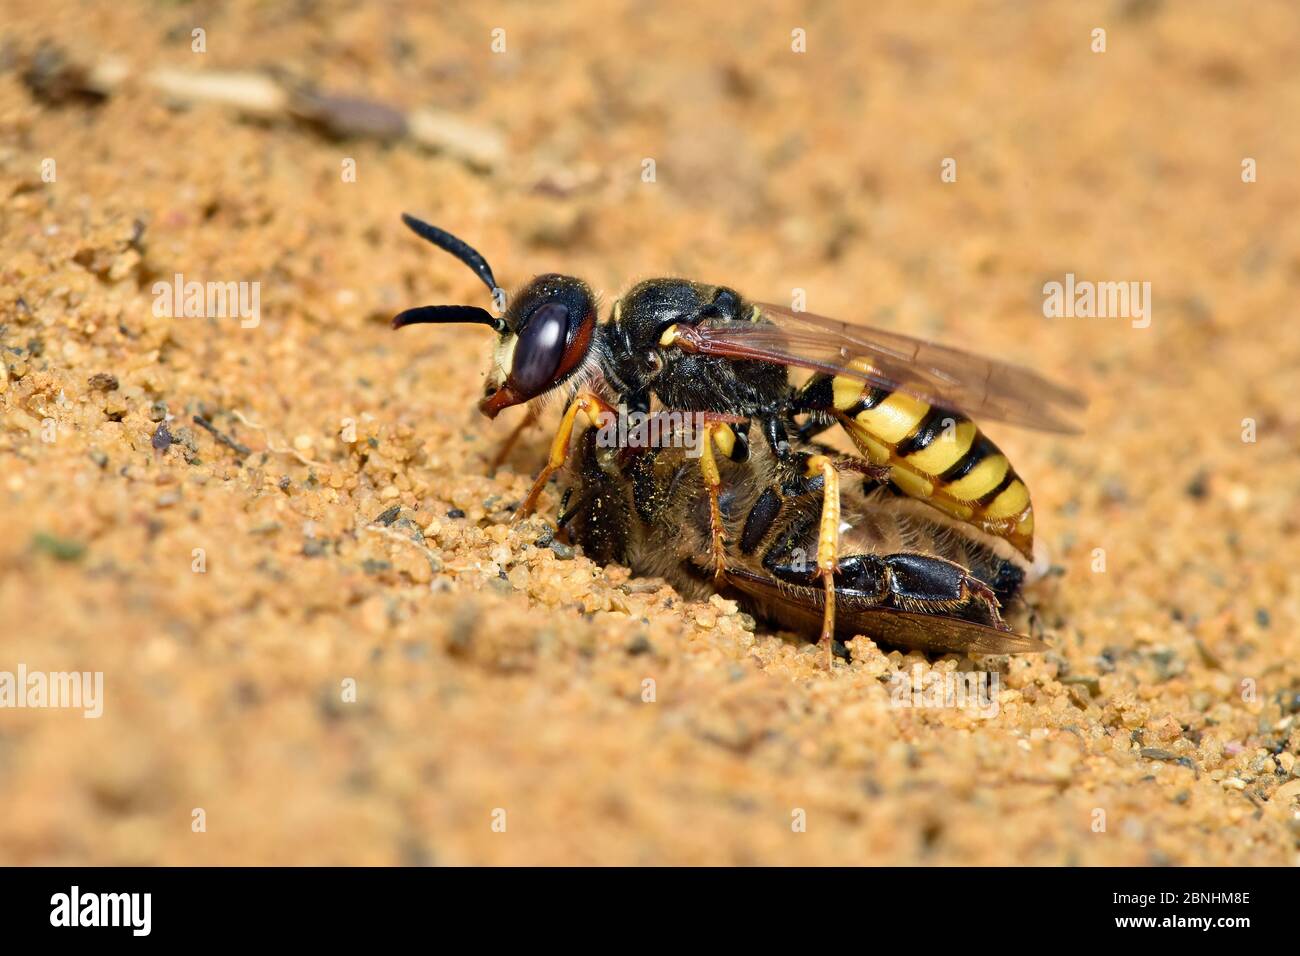 Abeille tueur Wasp / Beewolf (Philanthus triangulum) femelle avec abeille paralysée sur la lande sablonneuse, Surrey, Angleterre, Royaume-Uni, juillet Banque D'Images